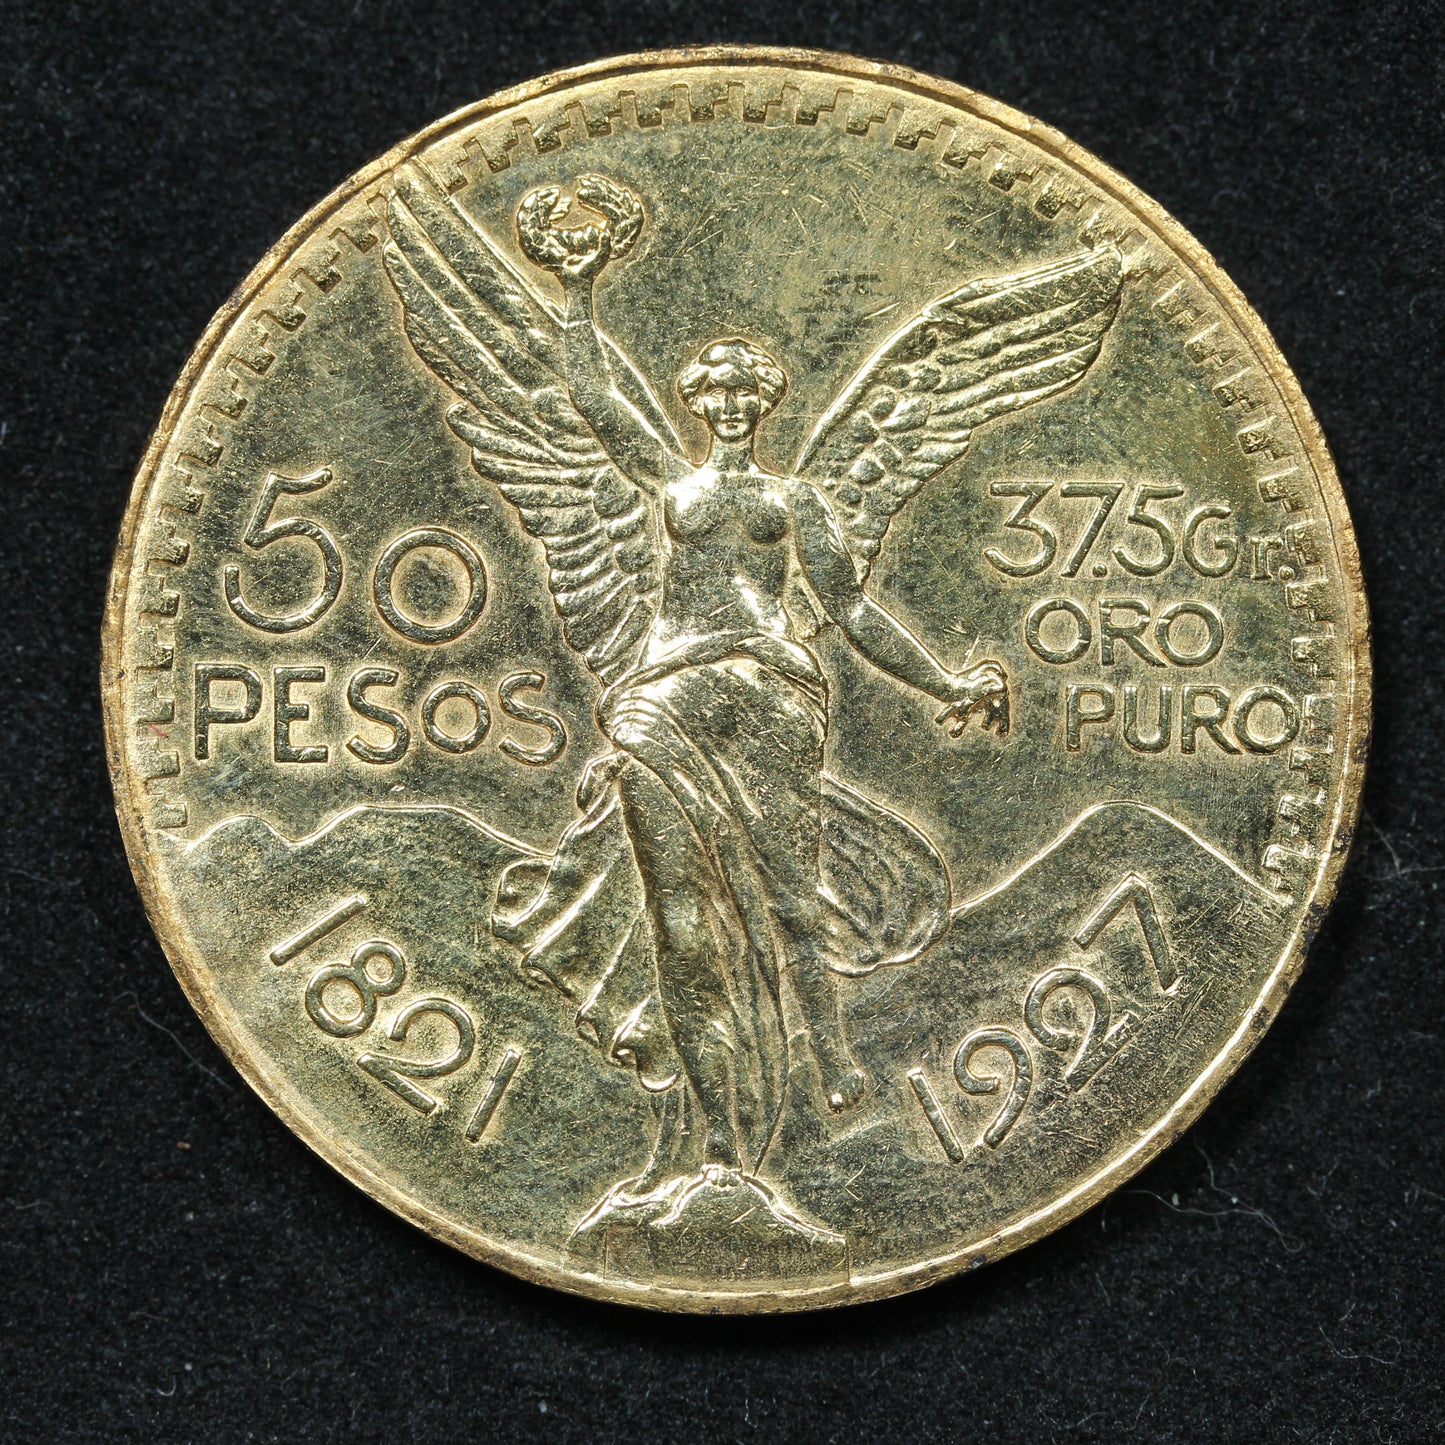 1927 50 Pesos Mexico Gold Coin Exact Coin Pictured